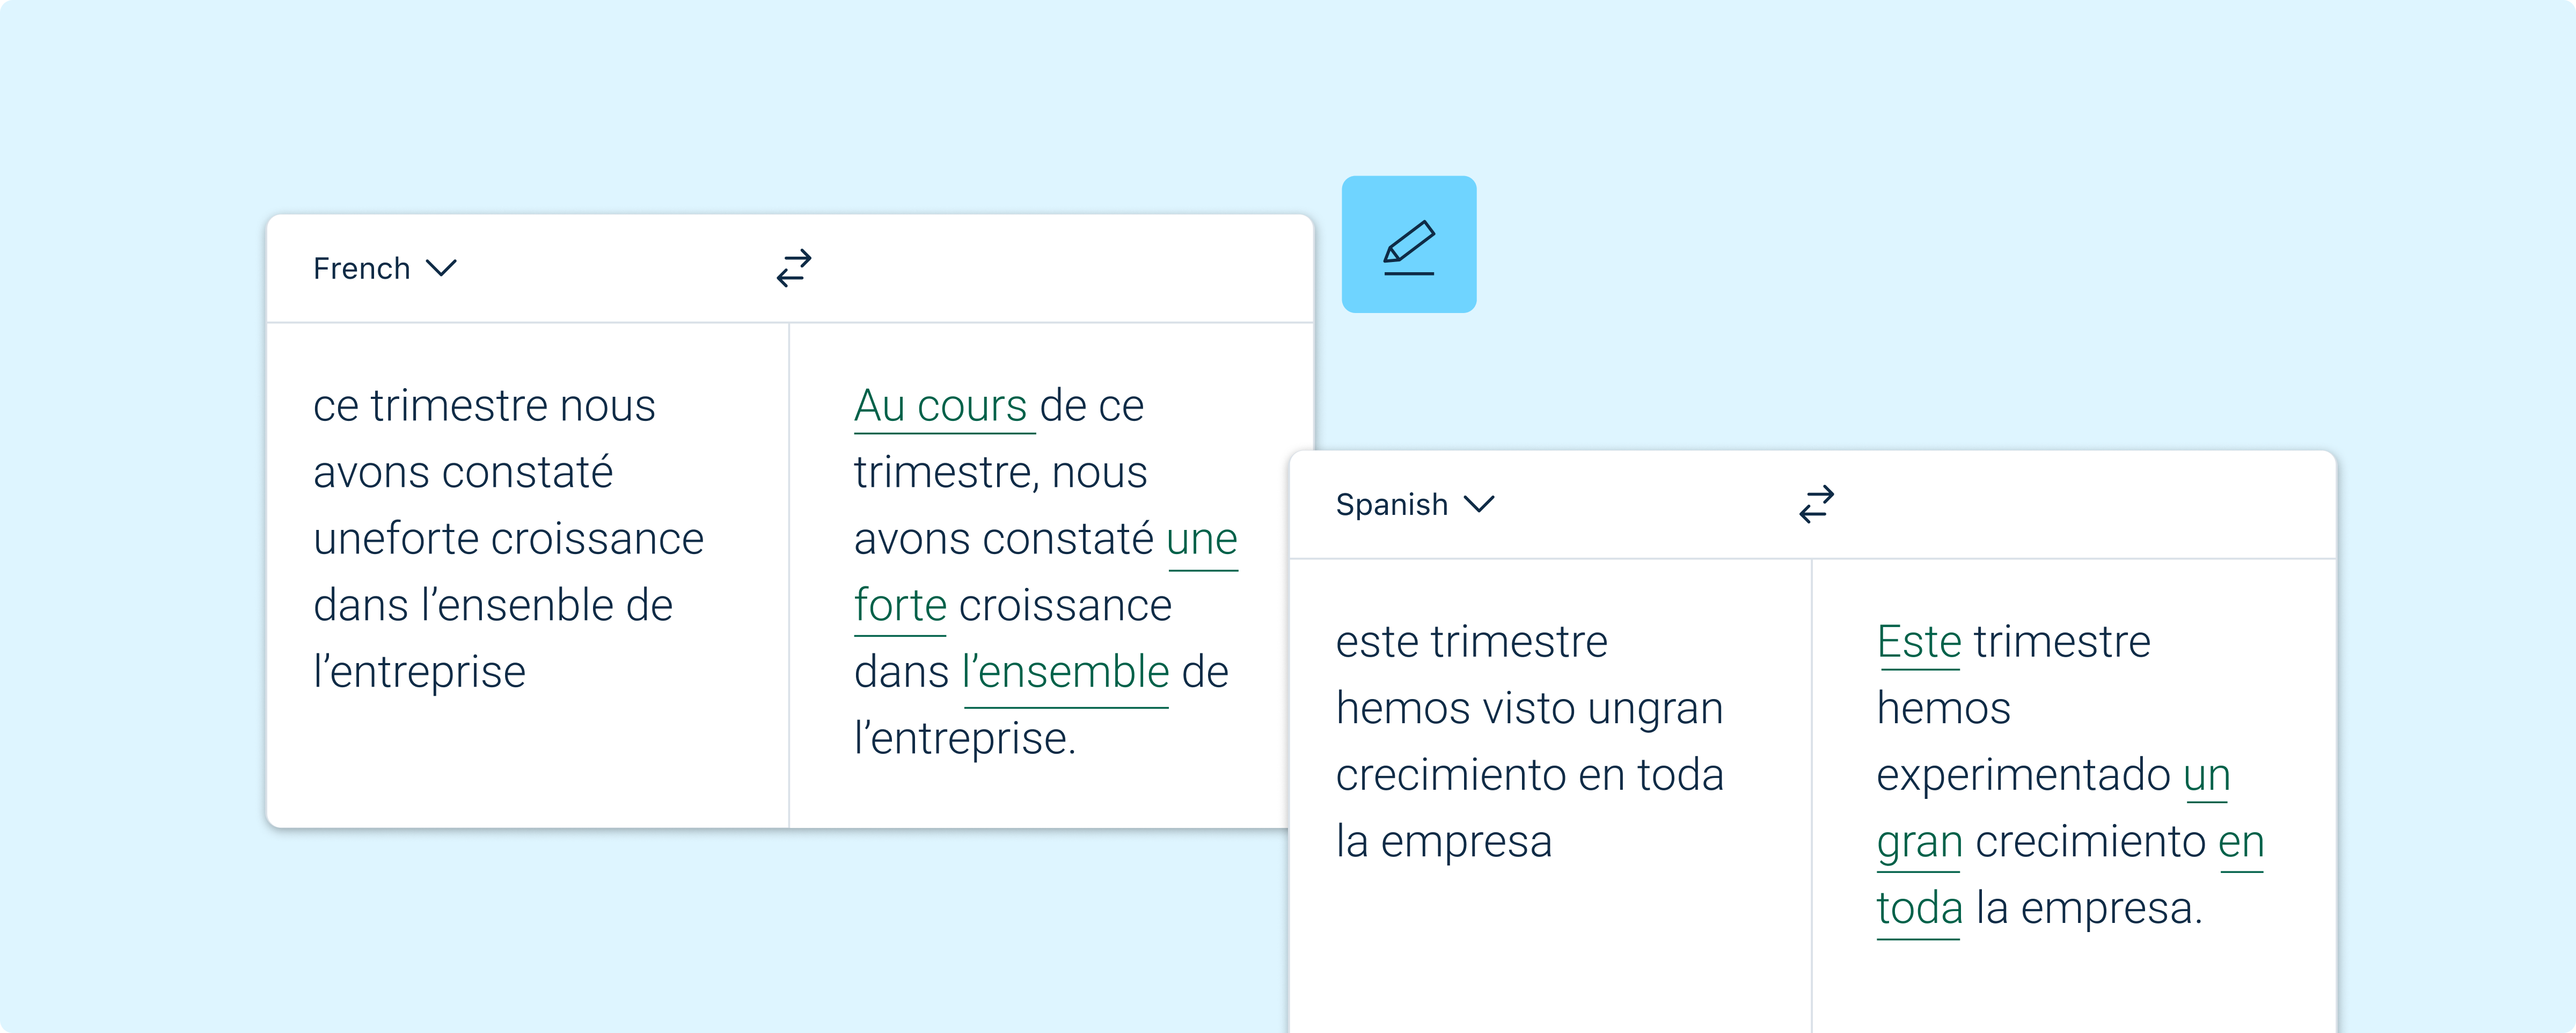 Ilustração da interface de usuário do DeepL Write mostrando um exemplo de correção de erros de ortografia para melhorar a escrita em francês e espanhol